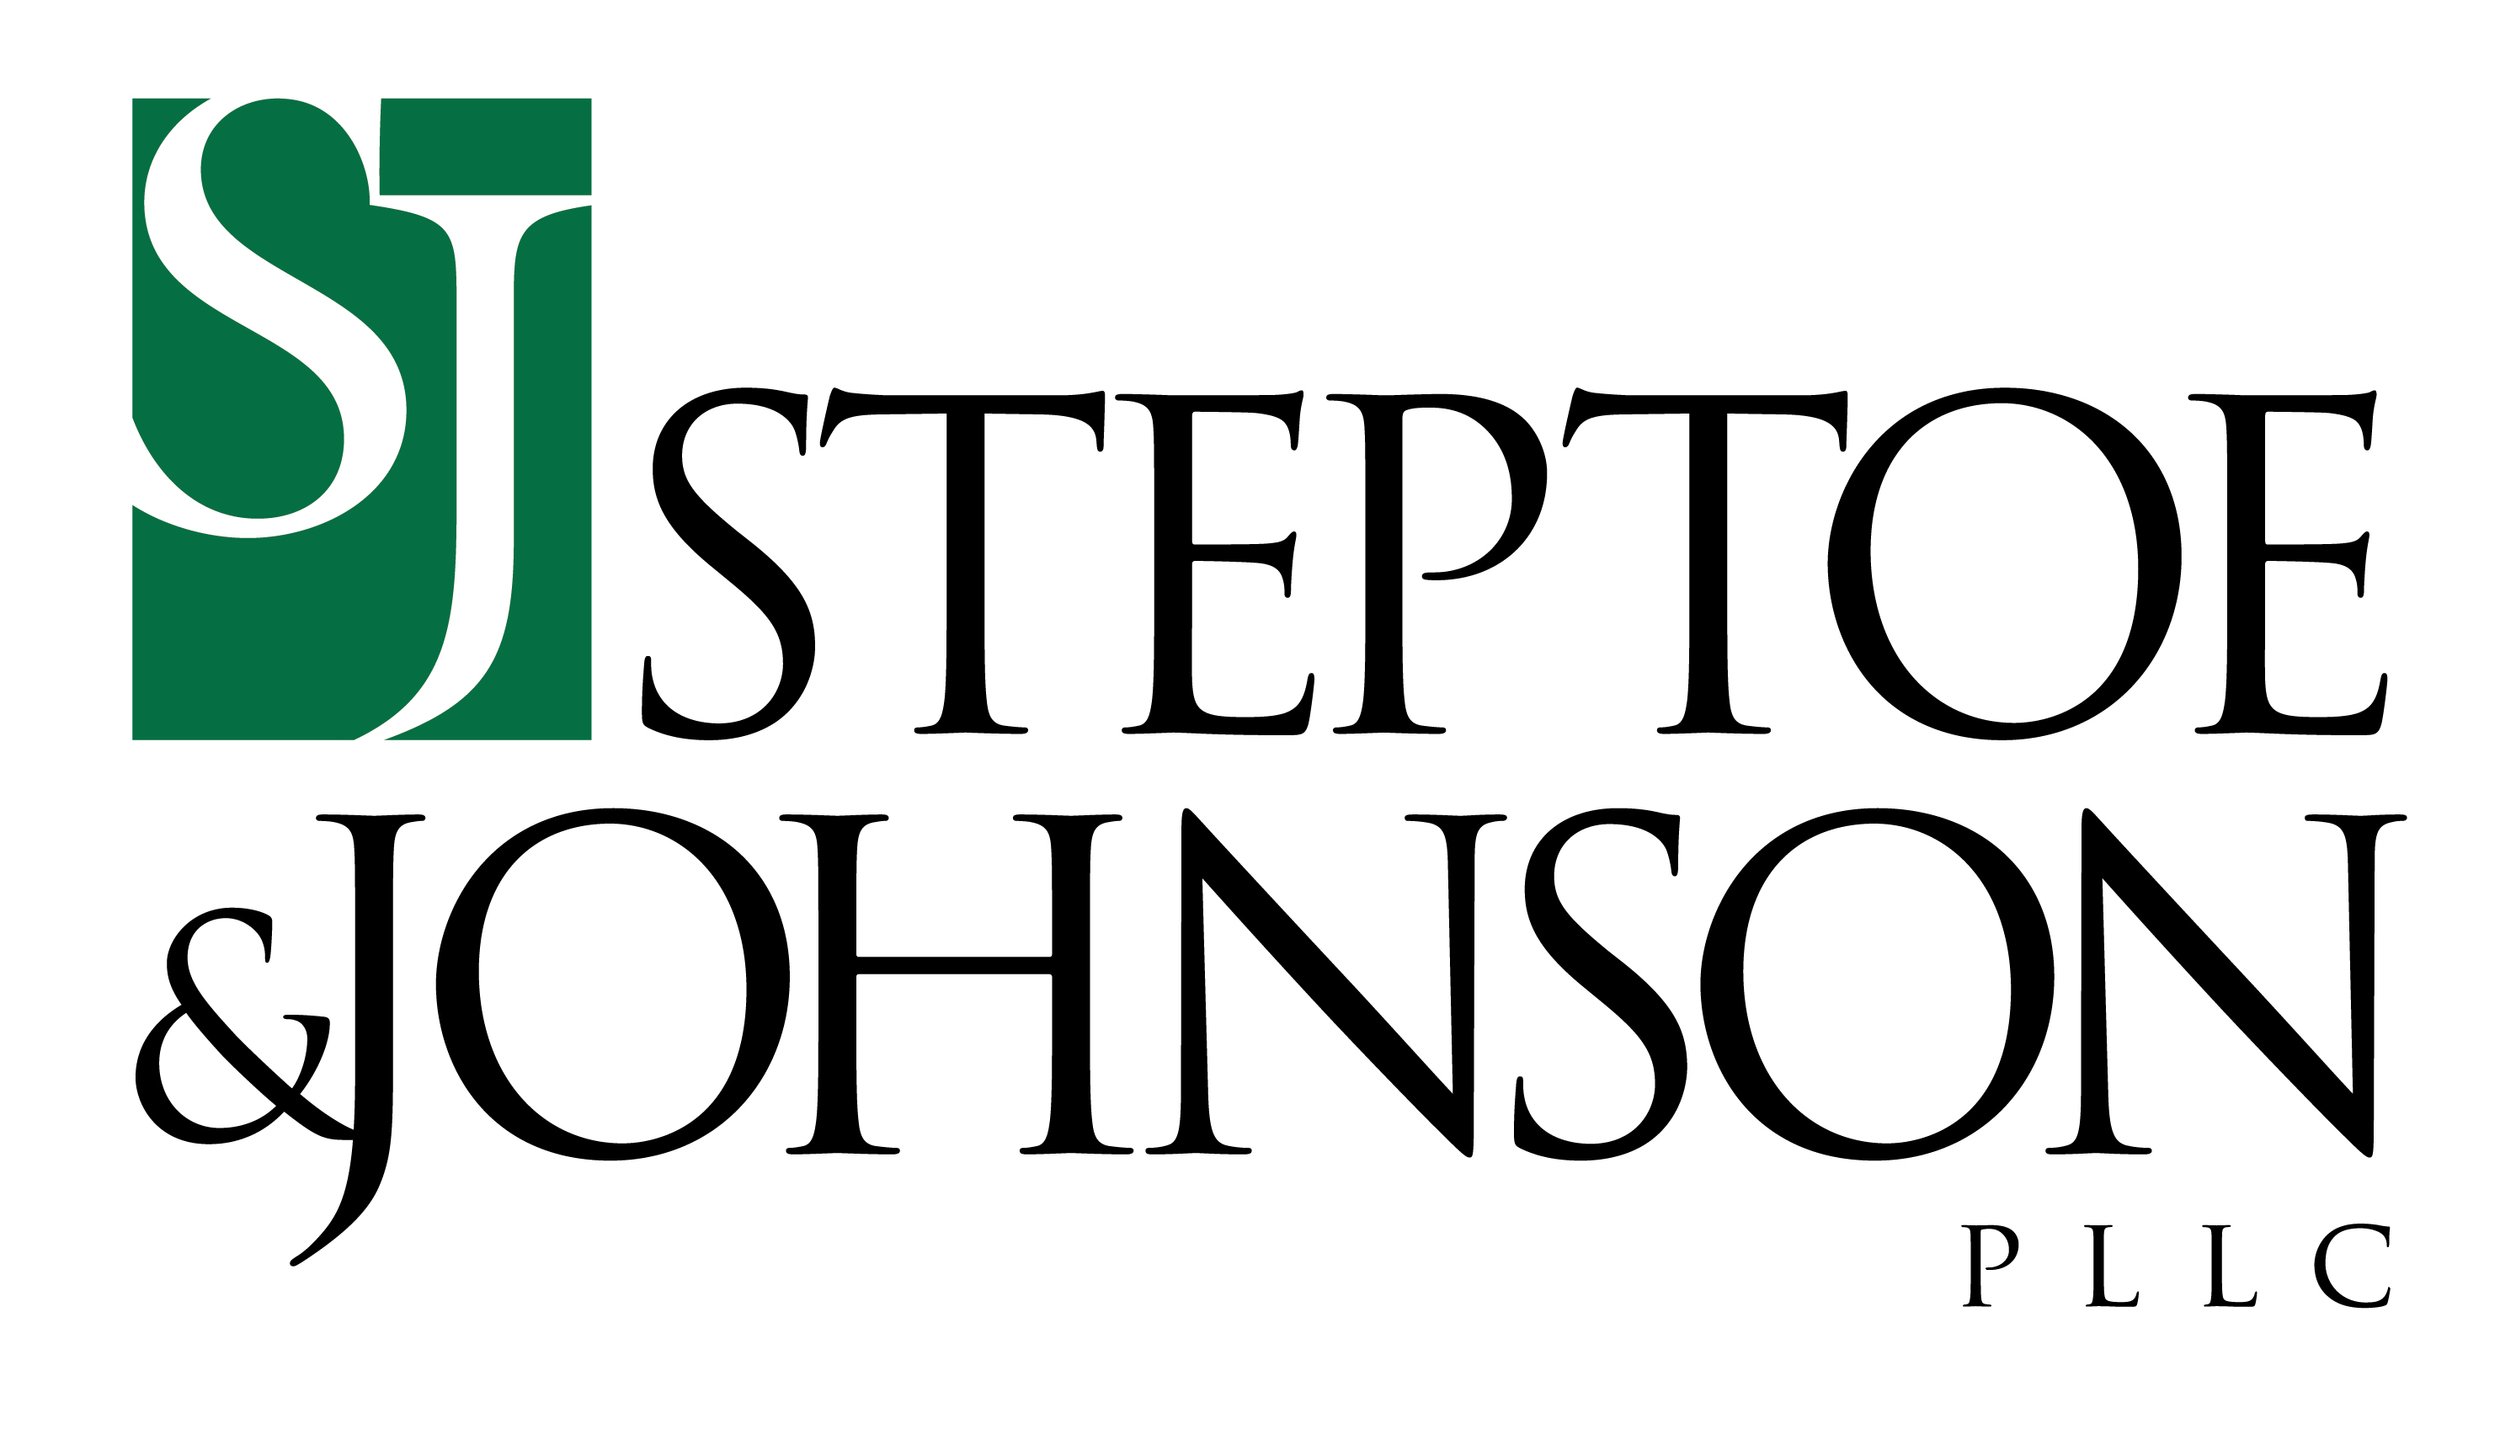 steptoe-johnson-logo-standard-black-green-jpg.jpg